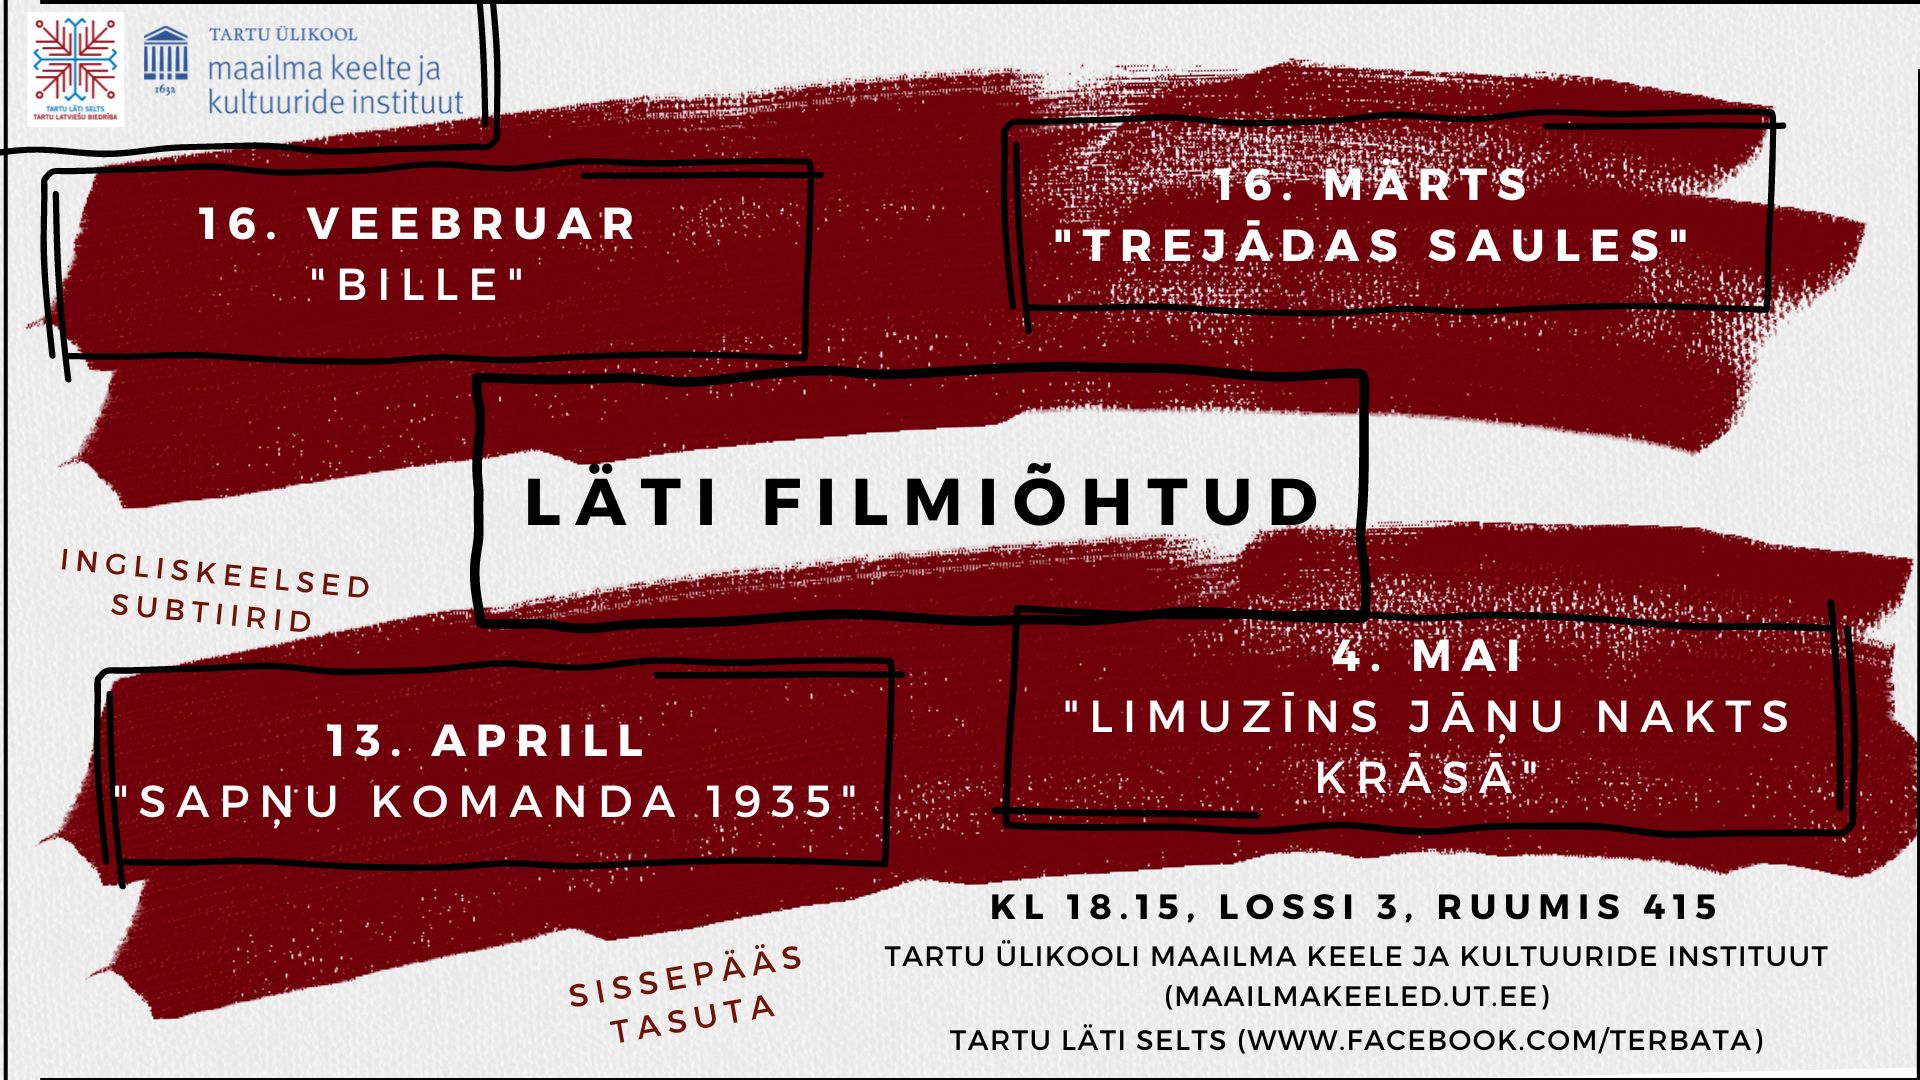 Läti filmiõhtud kuni 4.05